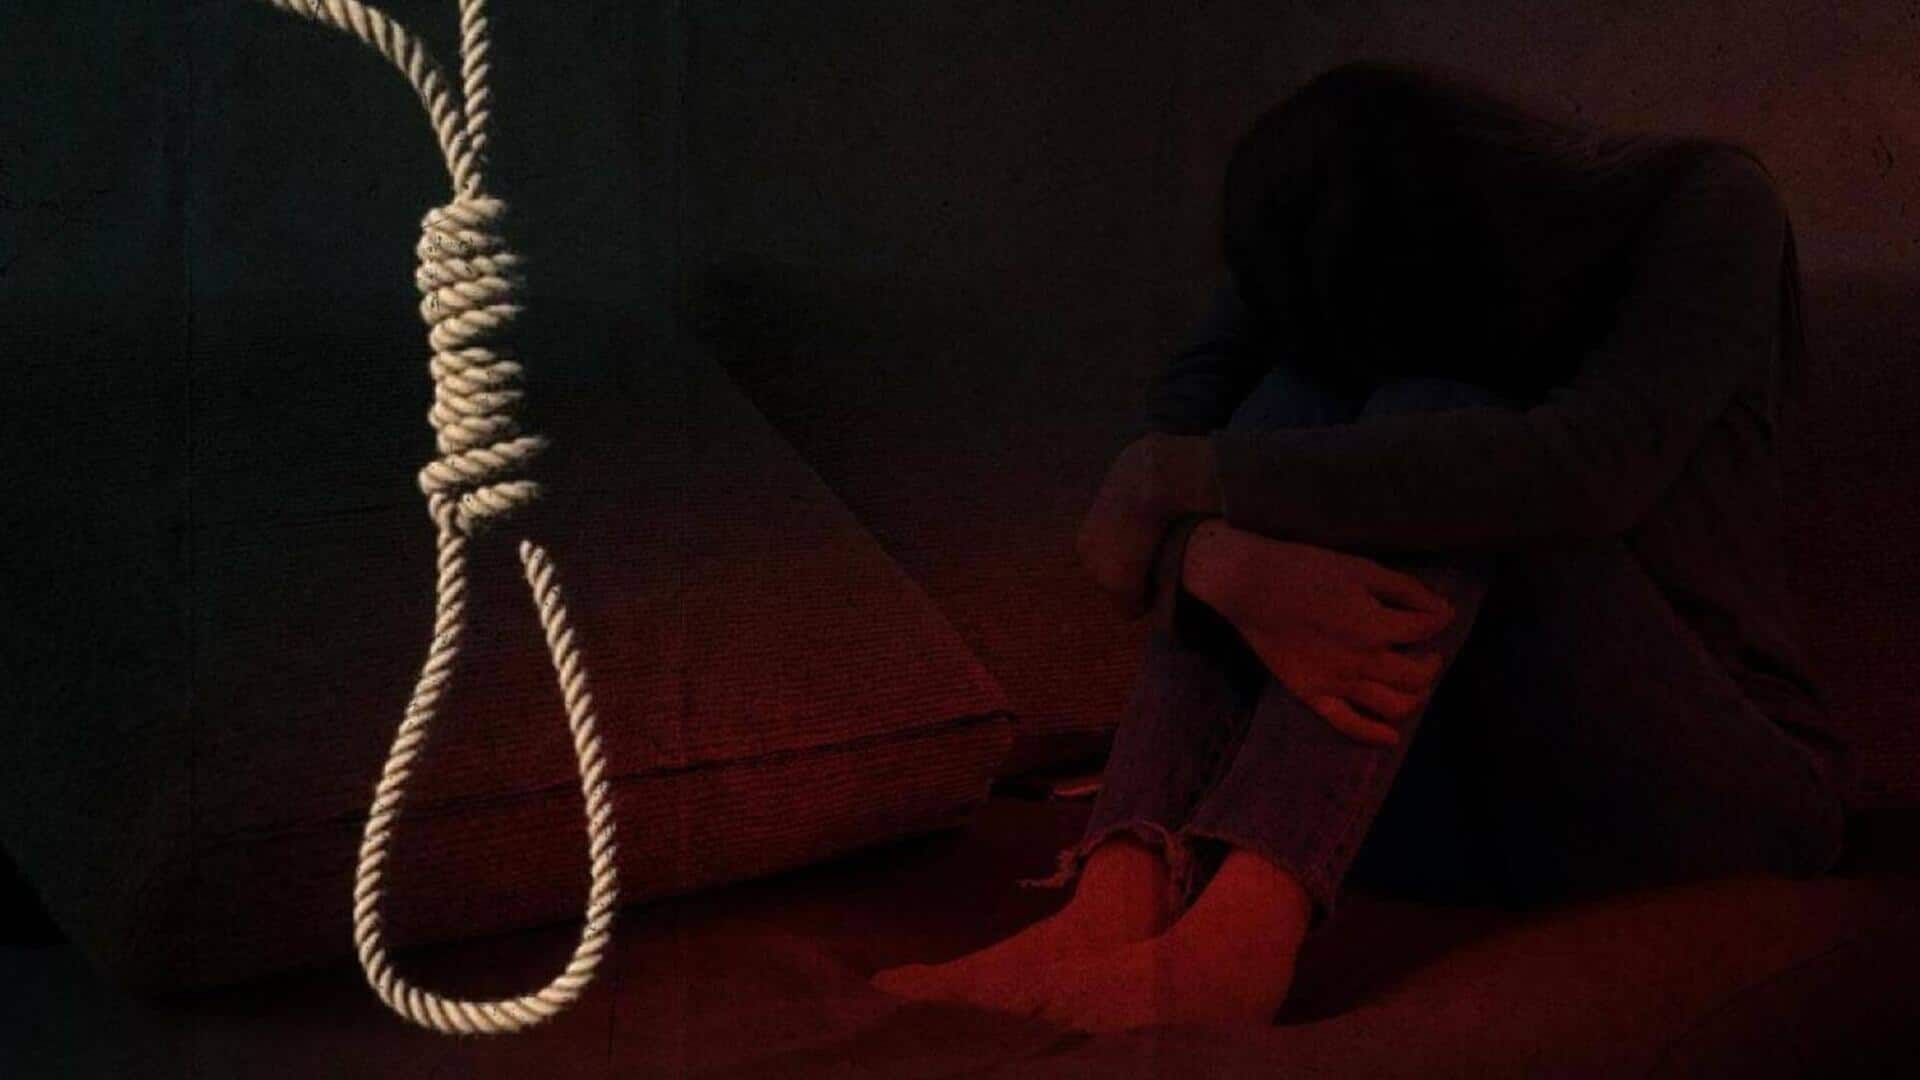 केरल: साइबर उत्पीड़न का शिकार 18 वर्षीय सोशल मीडिया इन्फ्लूएंसर लड़की ने आत्महत्या की